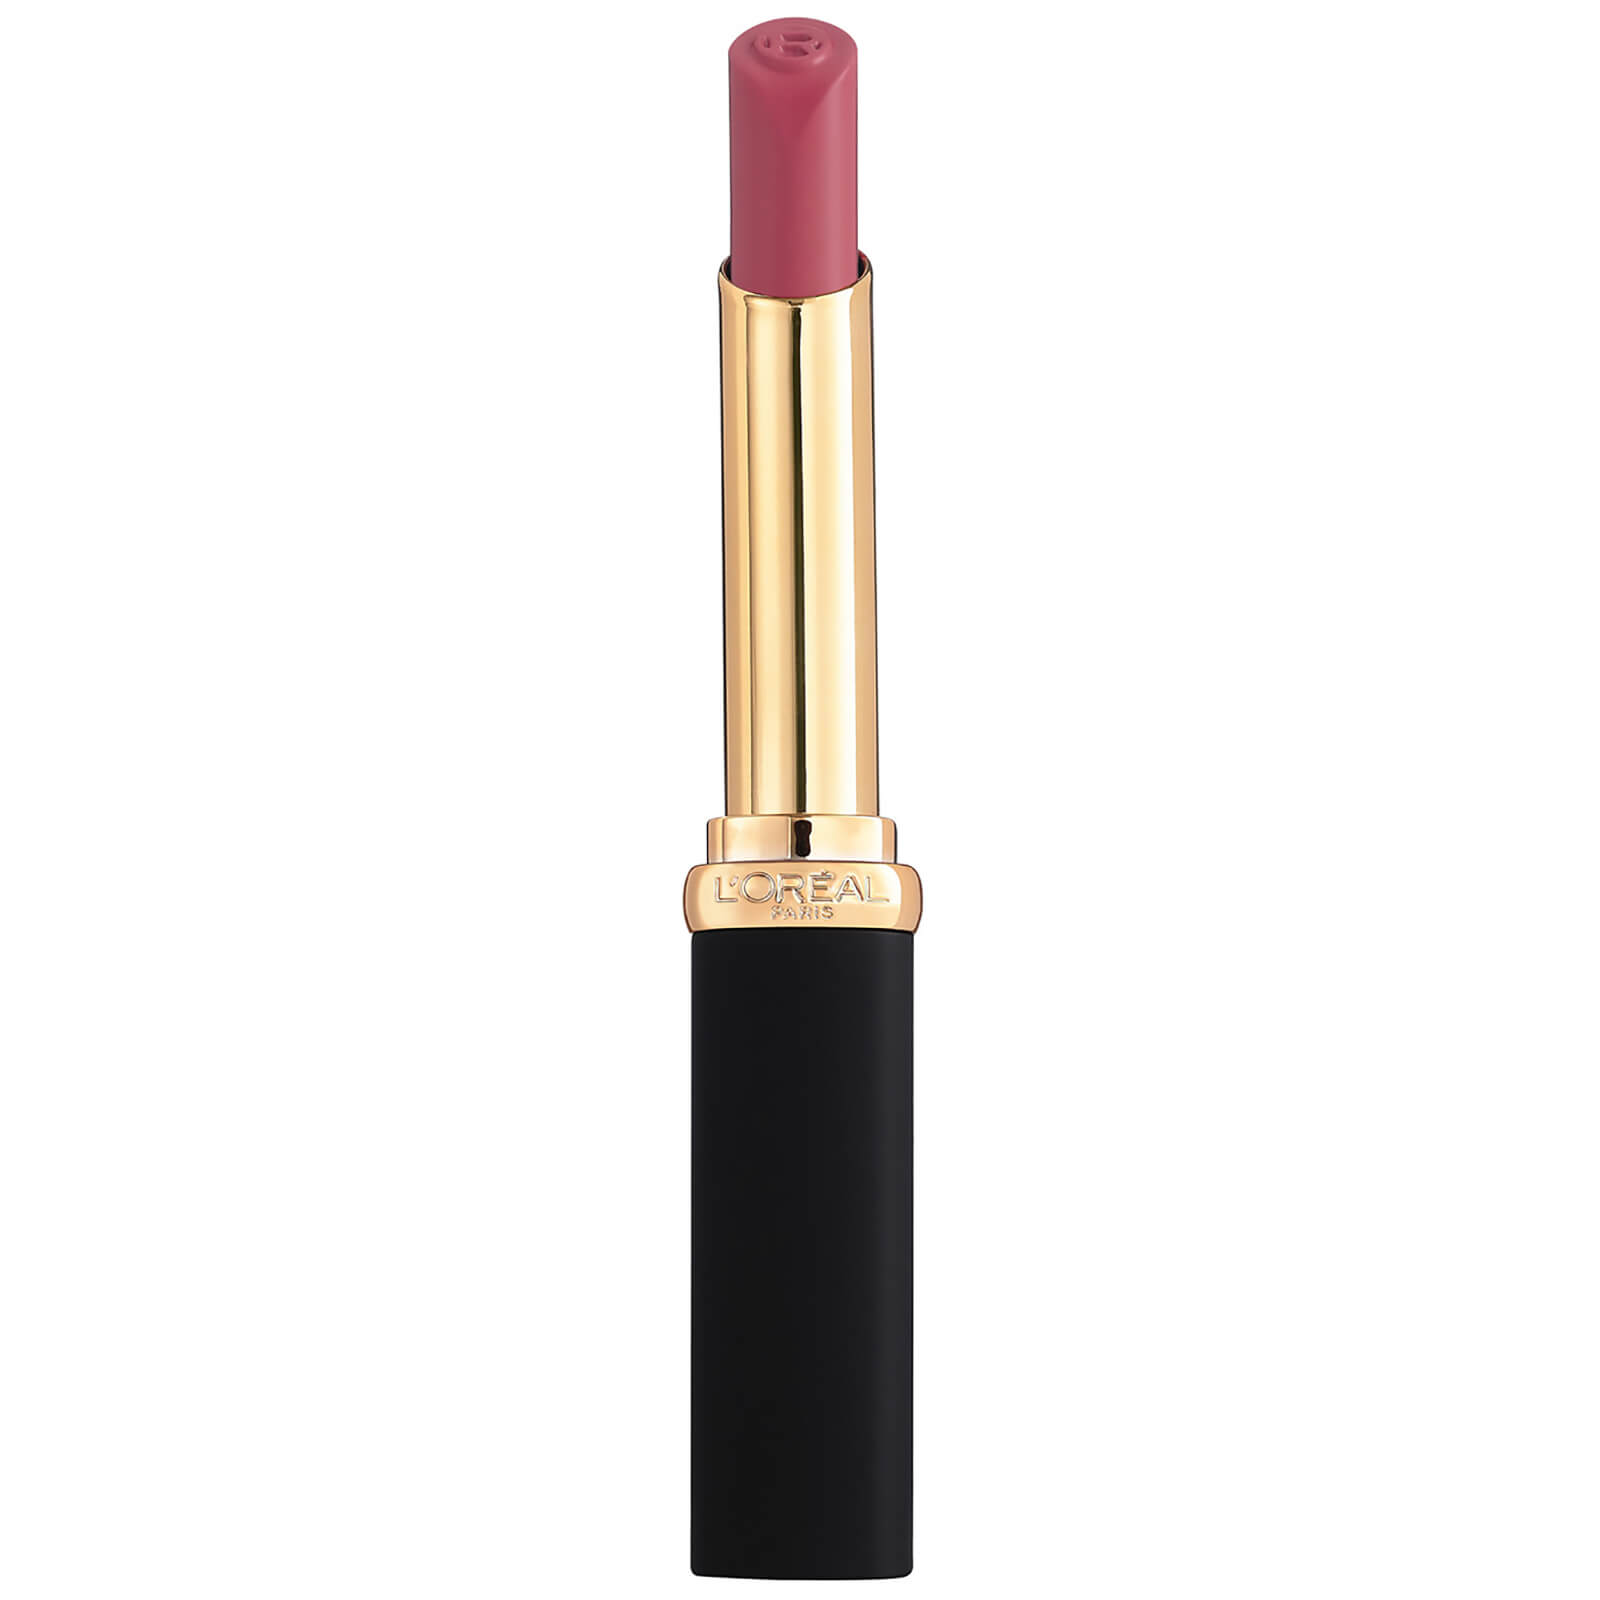 L'oréal Paris L'oreal Paris Colour Riche Intense Volume Matte Lipstick 25g (various Shades) - Mauve Indomptable